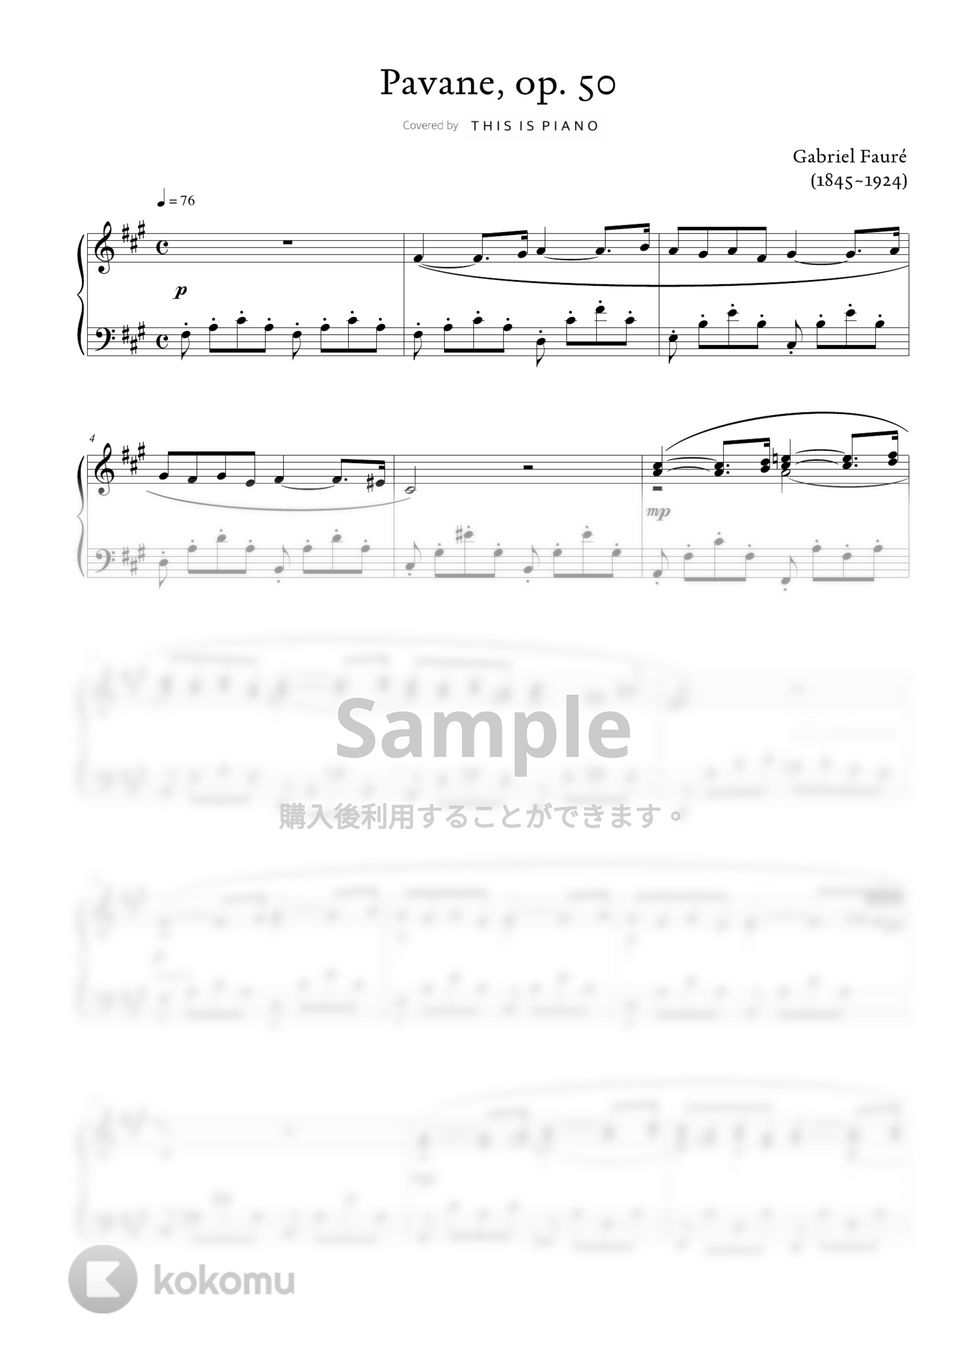 ガブリエル・フォーレ (G. Fauré) - パヴァーヌ (中級バージョン) by THIS IS PIANO